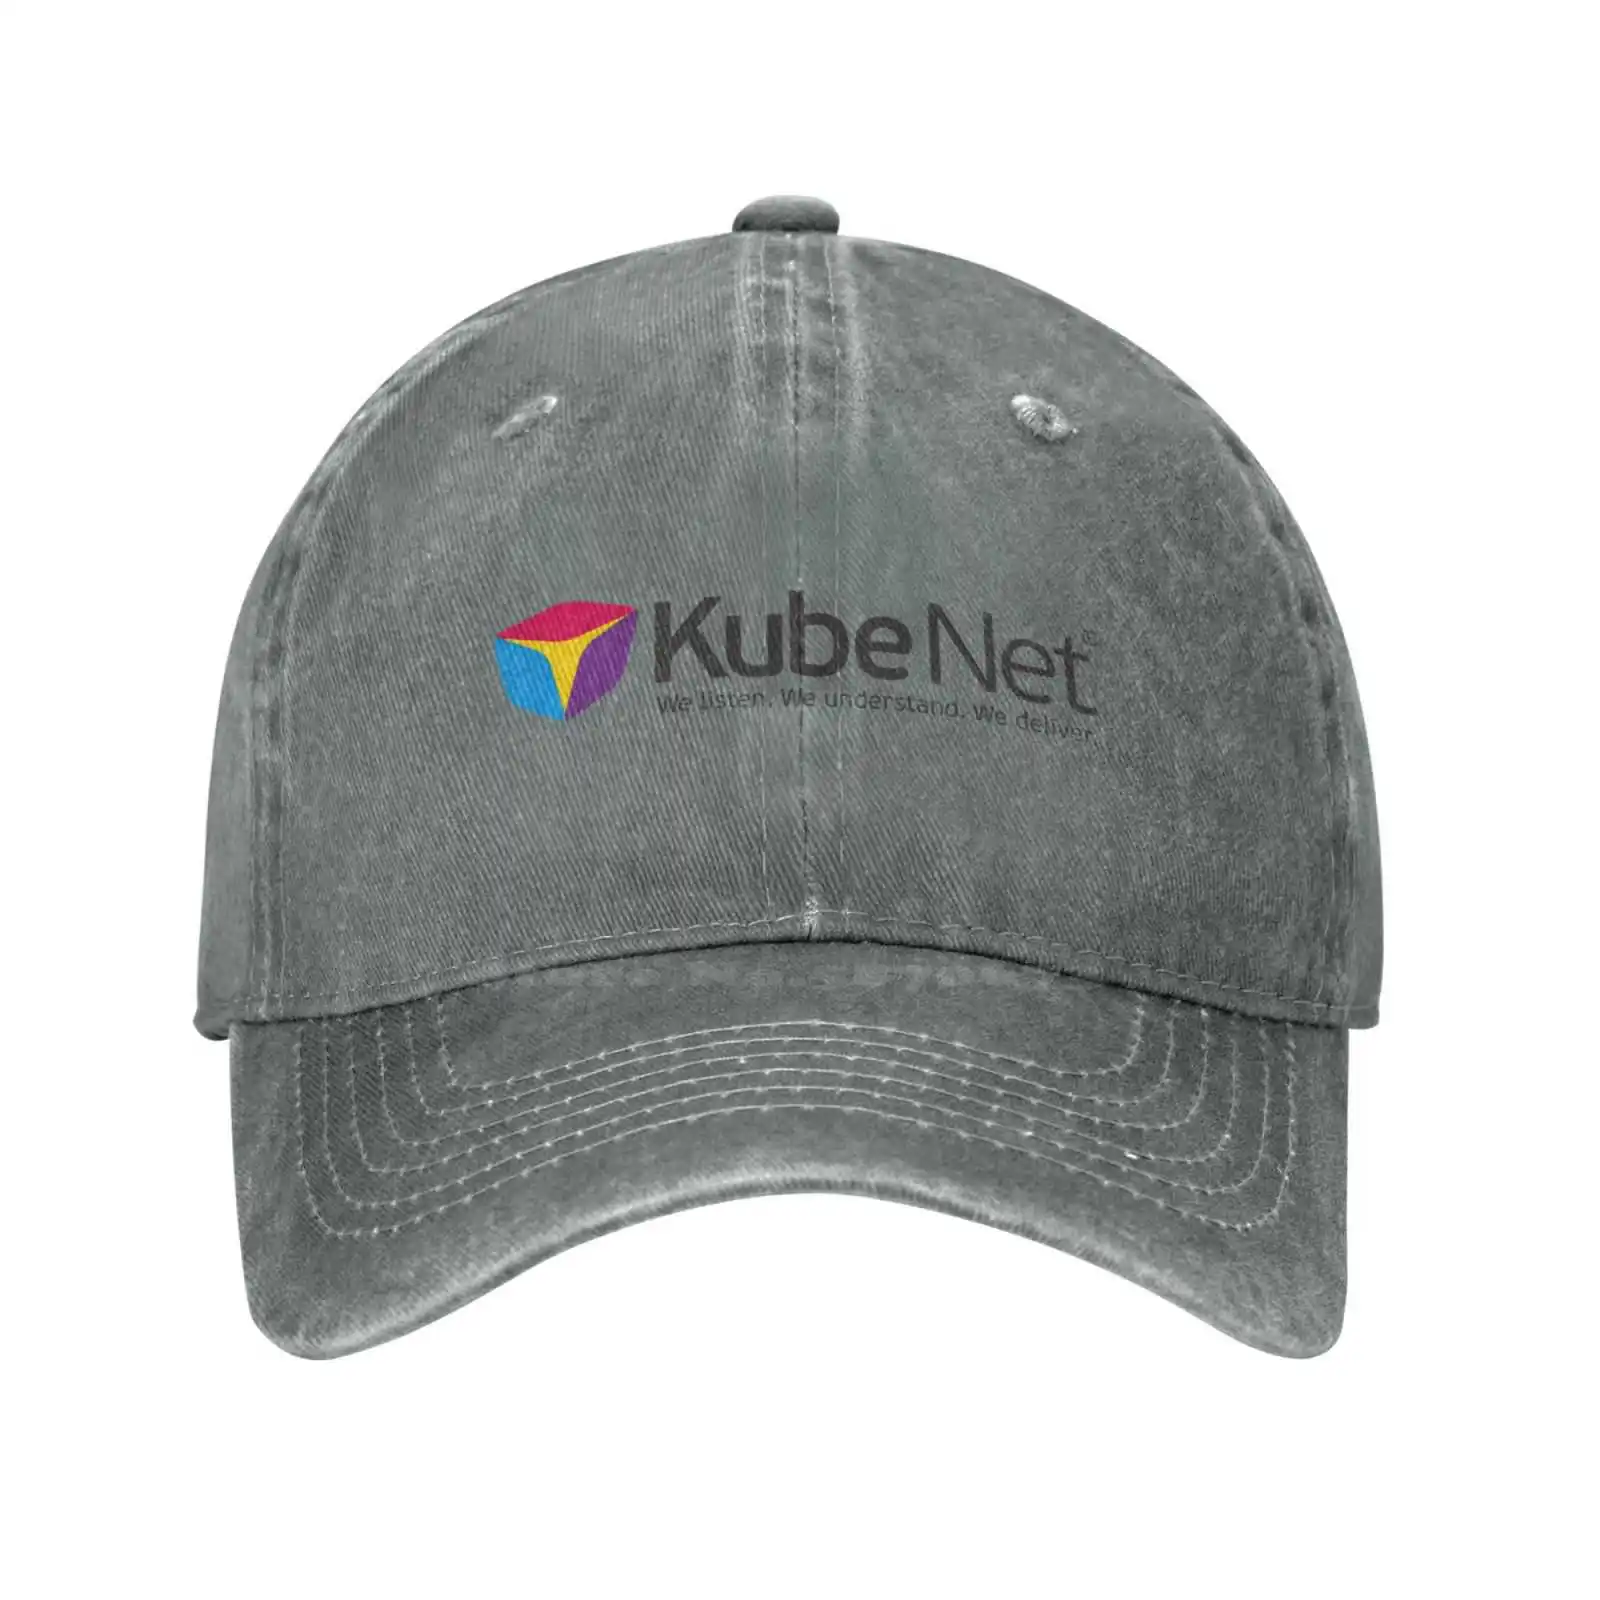 Görüntü /379326-Kubenet-logo-baskı-grafik-rahat-kot-kap-örme-şapka_cdn/share-5.jpeg